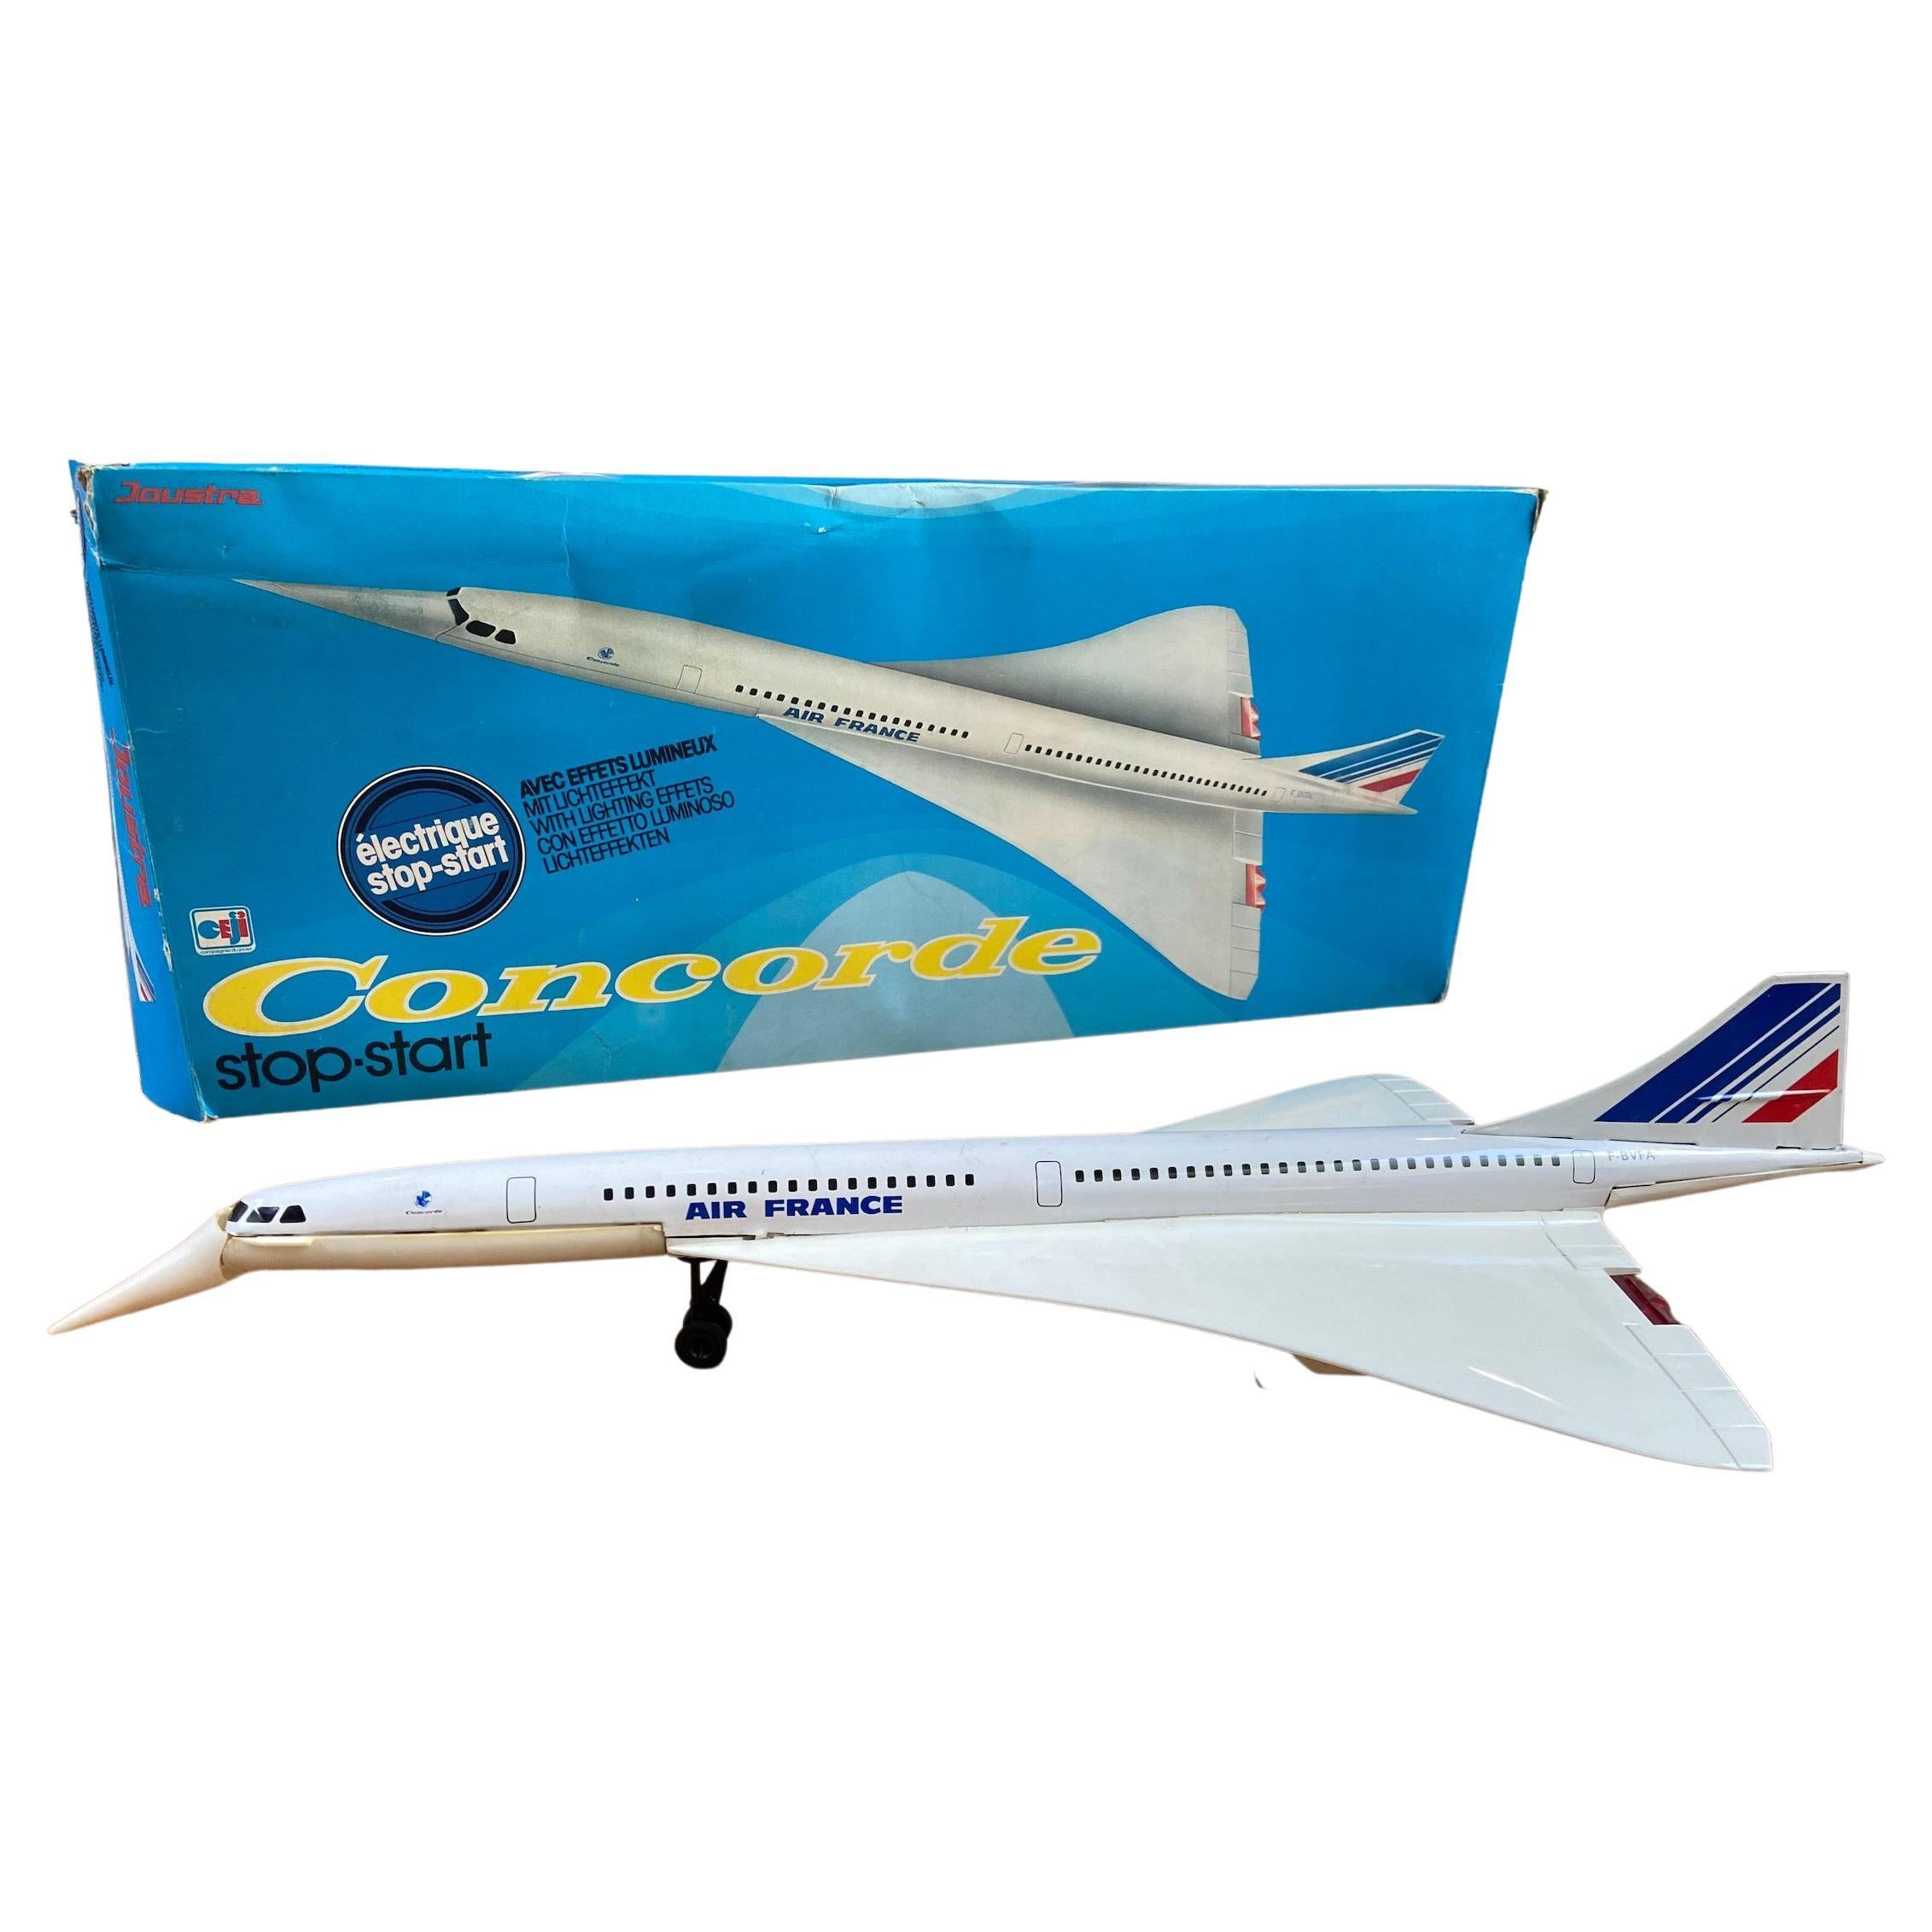 Sammlerspielzeug, Concorde 3 Flugzeug, 1970er Jahre